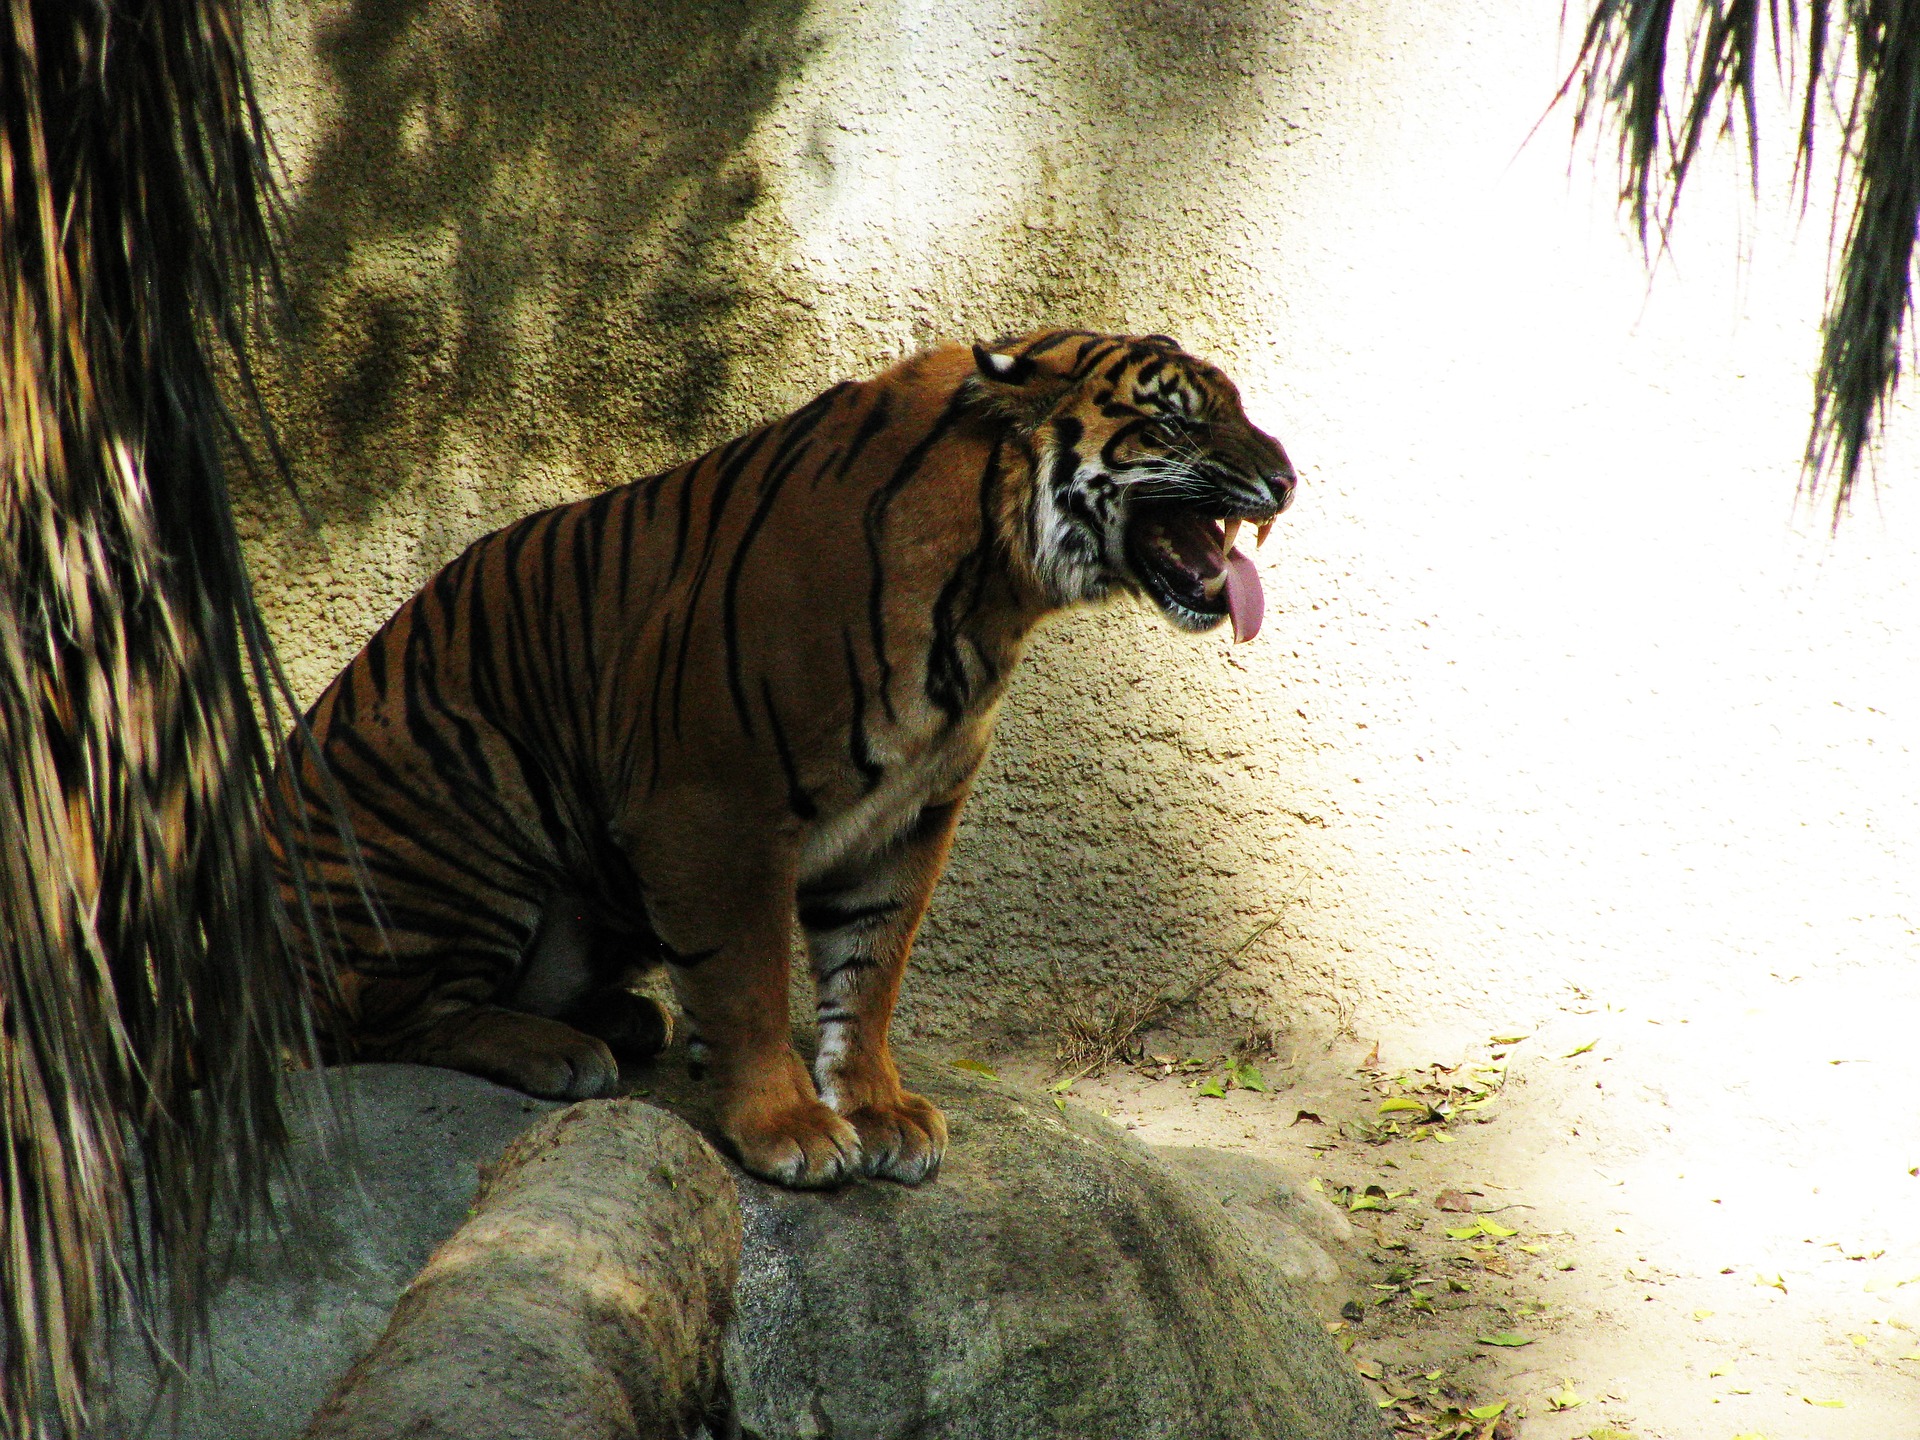 Tiger at Los Angeles Zoo